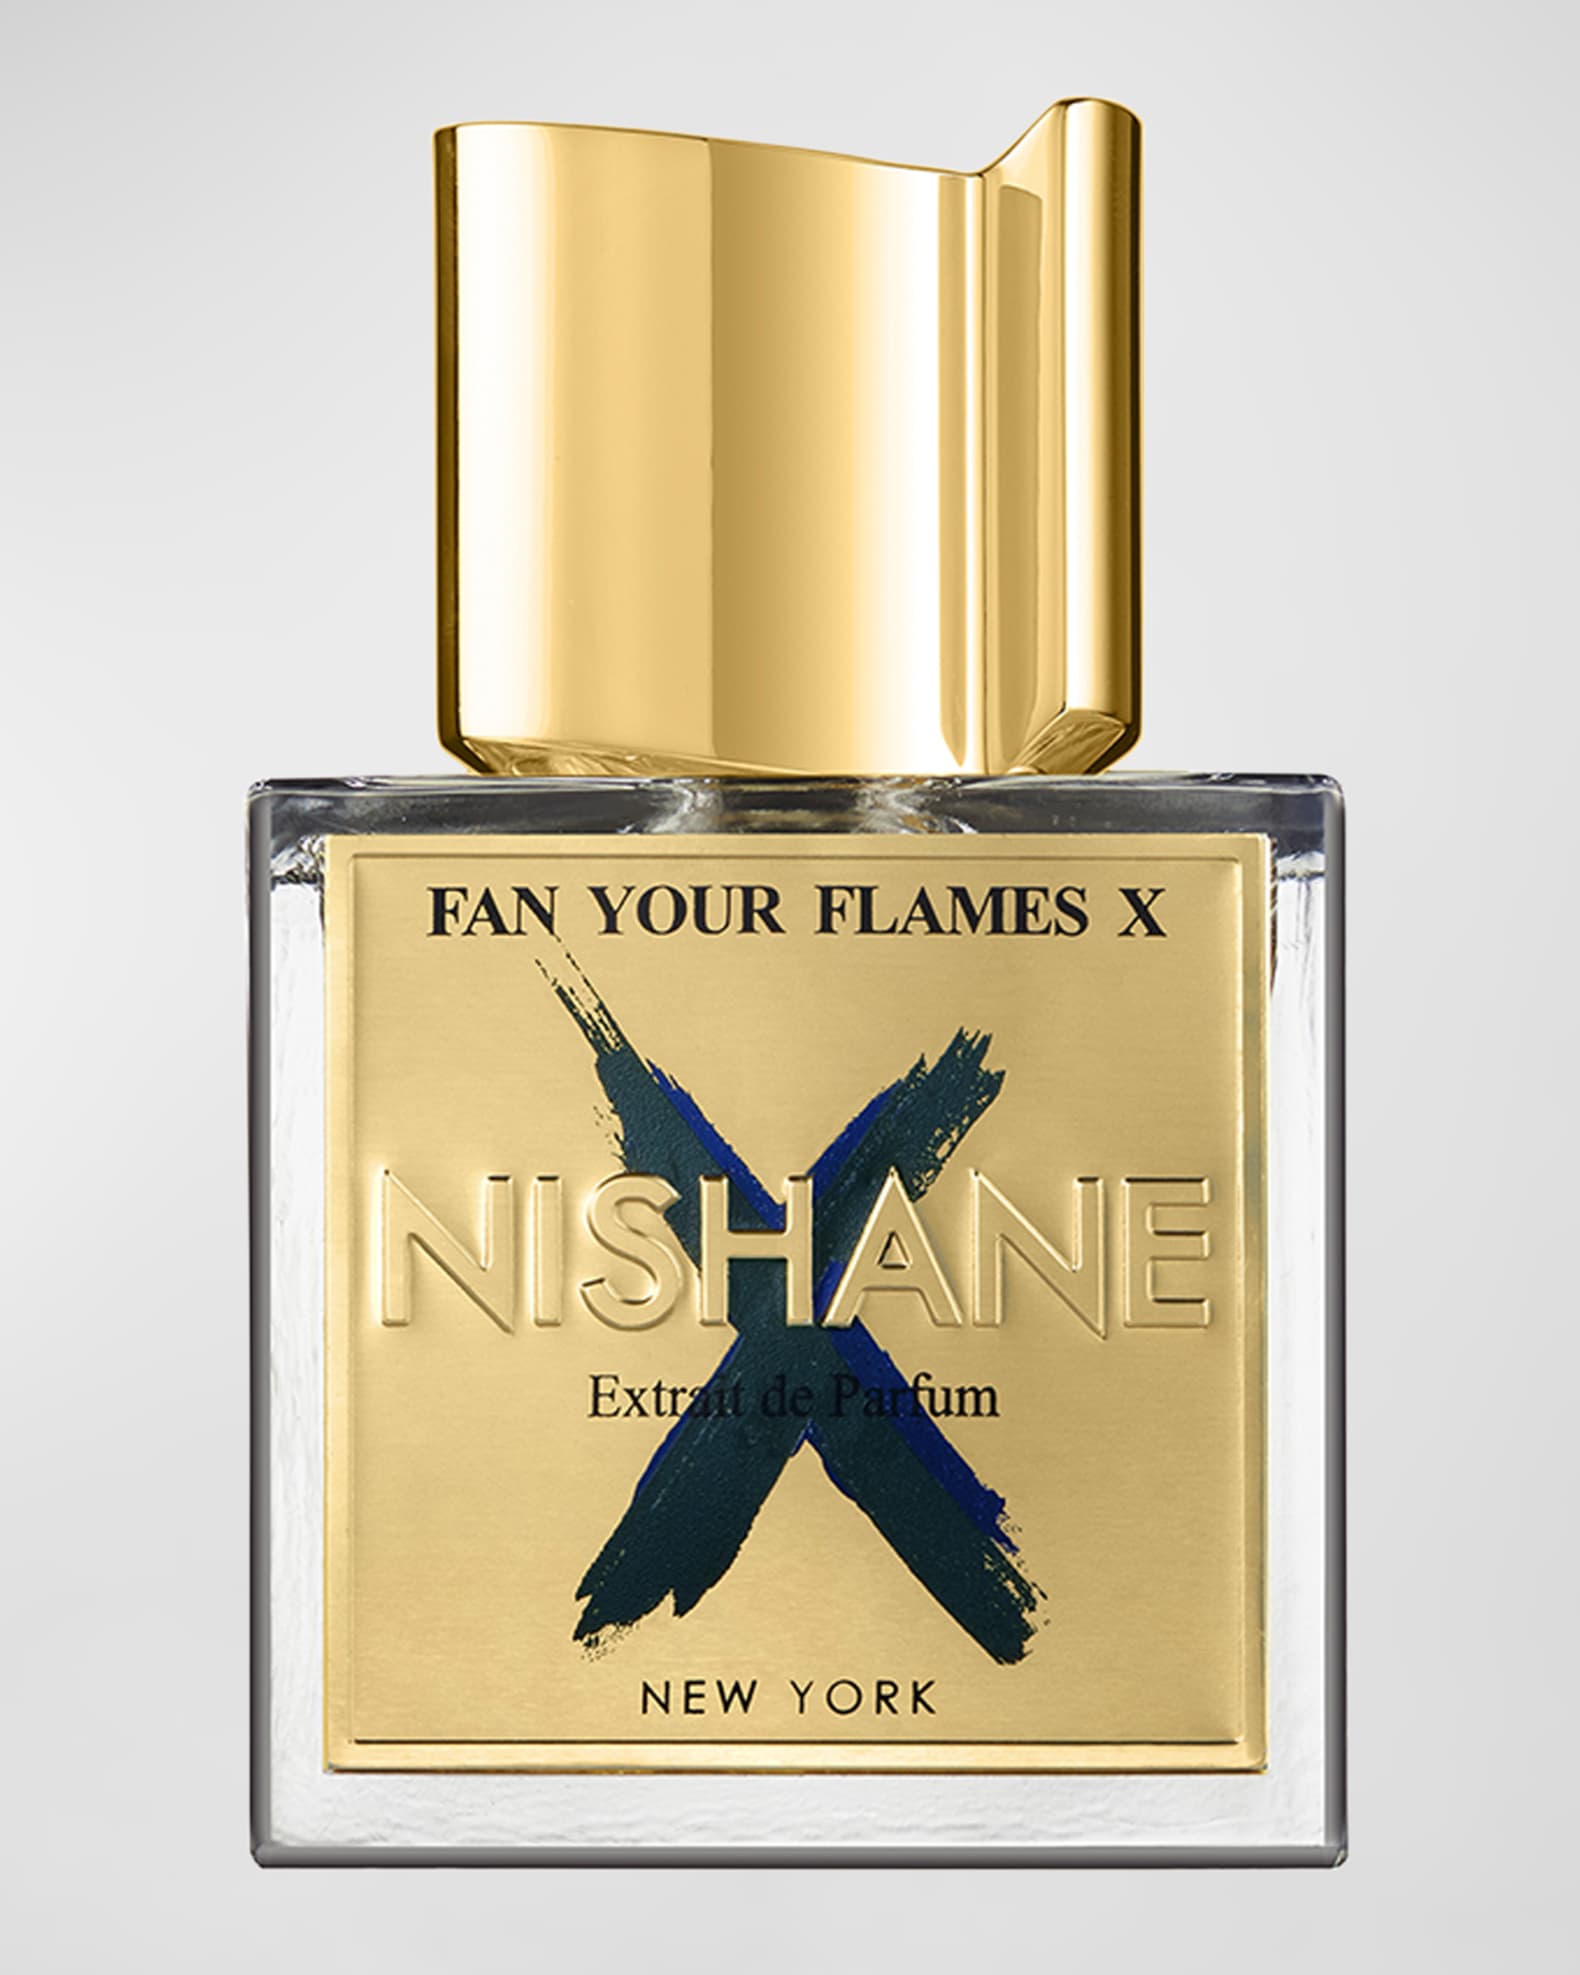 Nishane Fan Your Flames x Extrait de Parfum 3.4 oz Fragrance